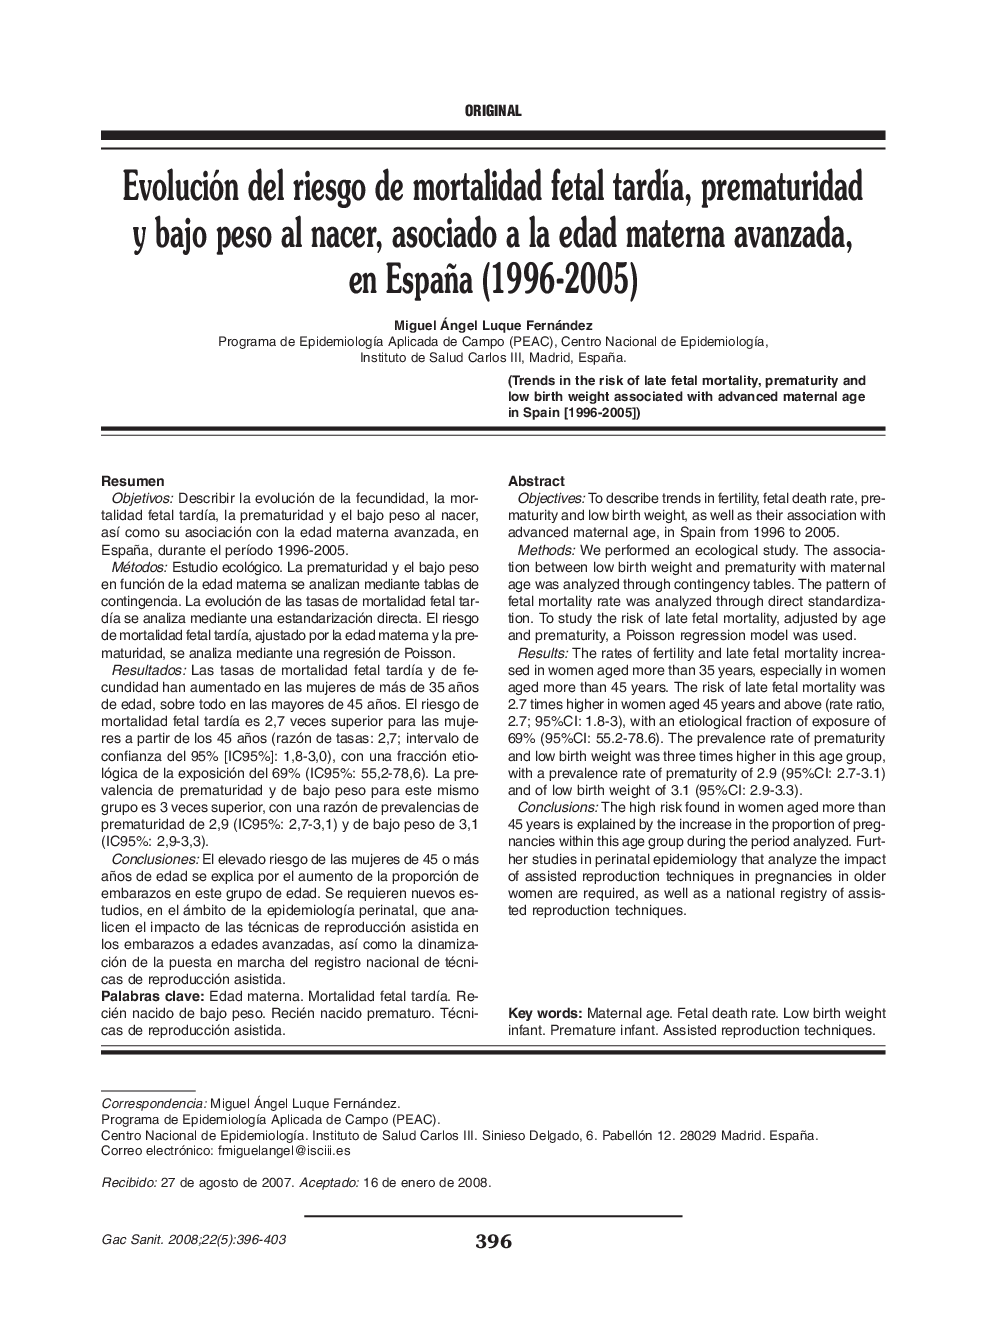 Evolución del riesgo de mortalidad fetal tardía, prematuridad y bajo peso al nacer, asociado a la edad materna avanzada, en España (1996-2005)